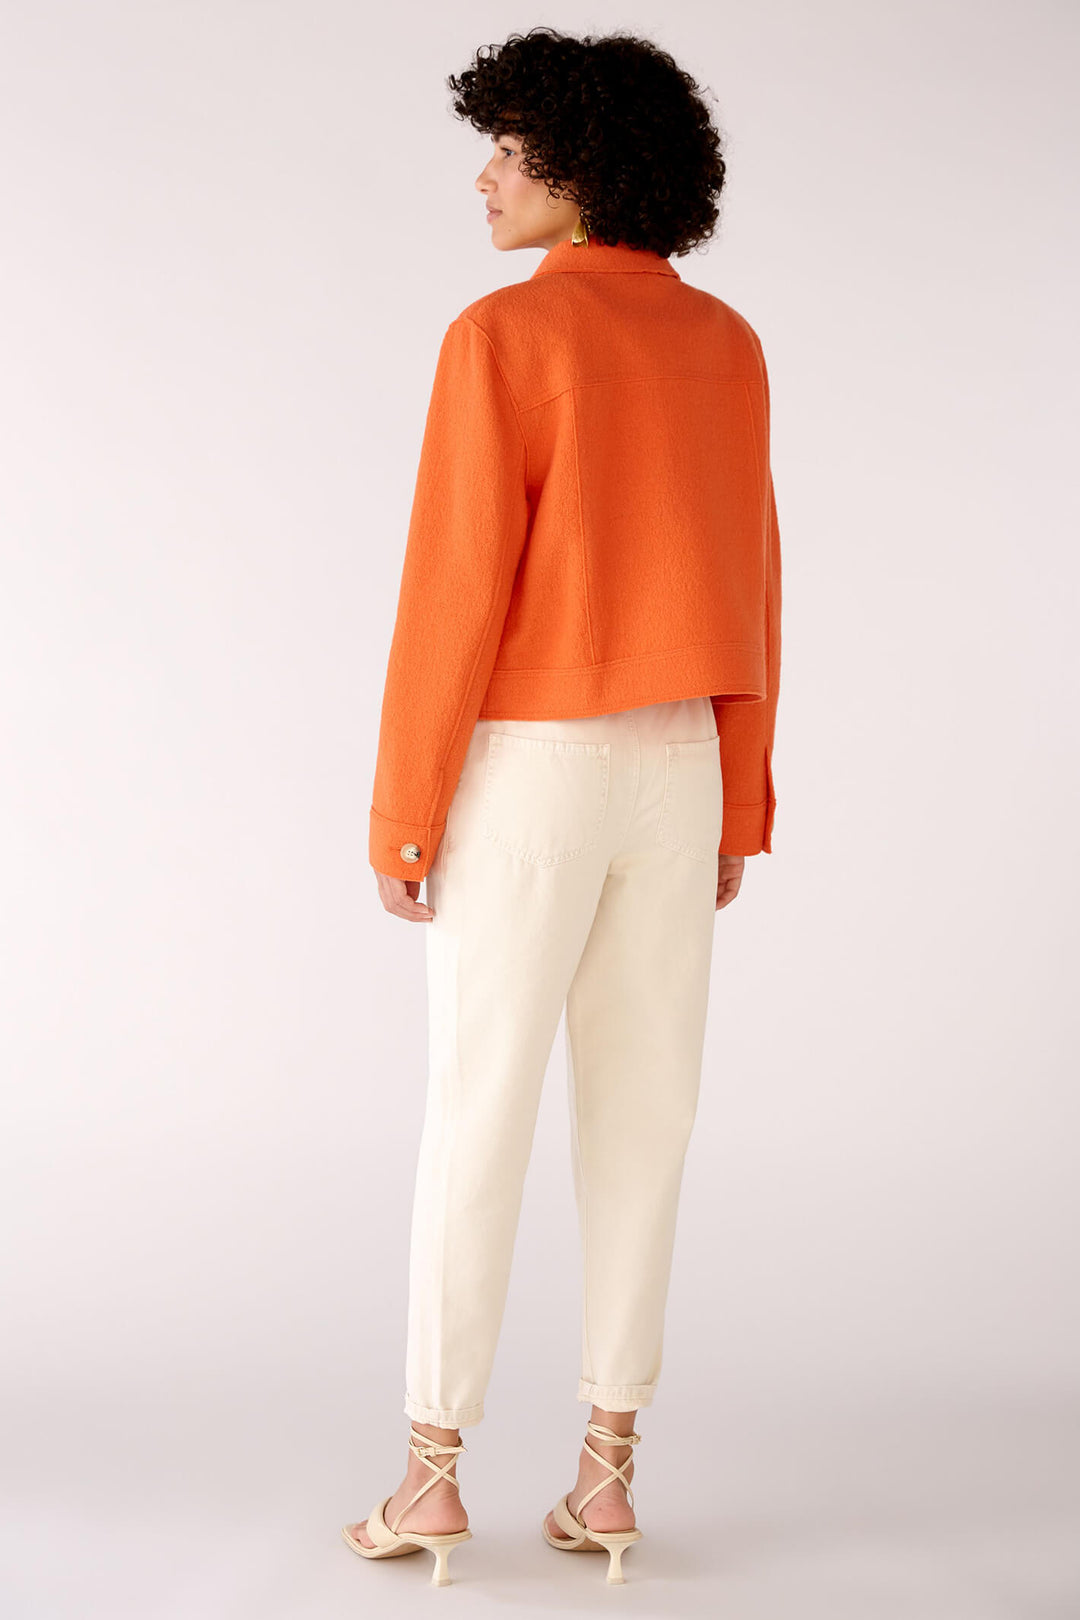 Oui 78167 Orange Wool Jacket - Olivia Grace Fashion